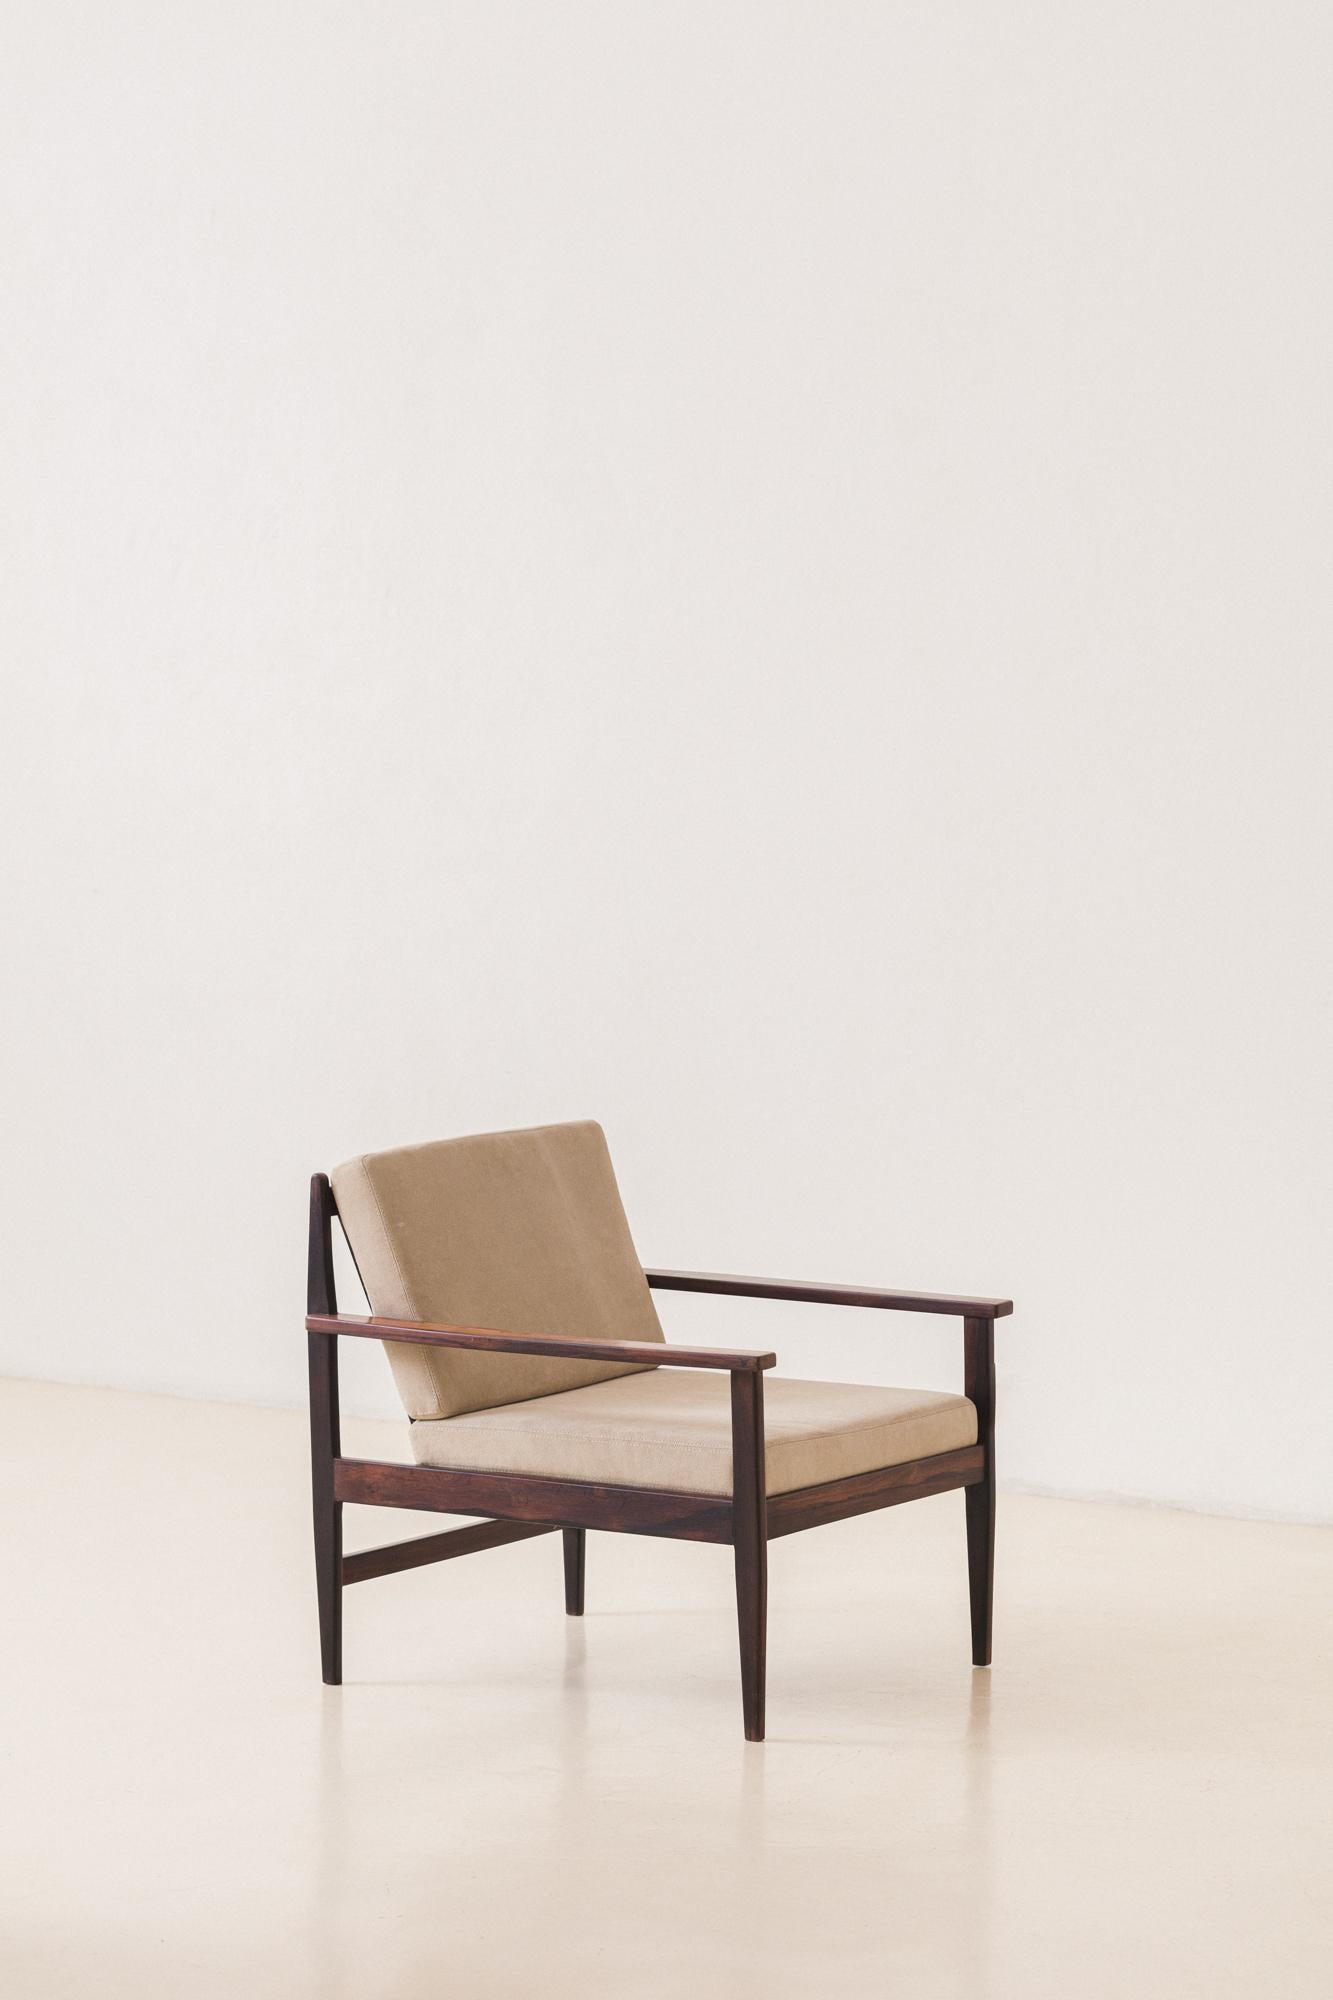 Dieser Sessel ist aus massivem brasilianischem Palisanderholz gefertigt und mit einer neuen Polsterung aus wunderschönem Veloursleder versehen. Die Armlehnen haben ein rechteckiges Design mit einer Rückseite aus vertikalen Latten. Dieses Modell